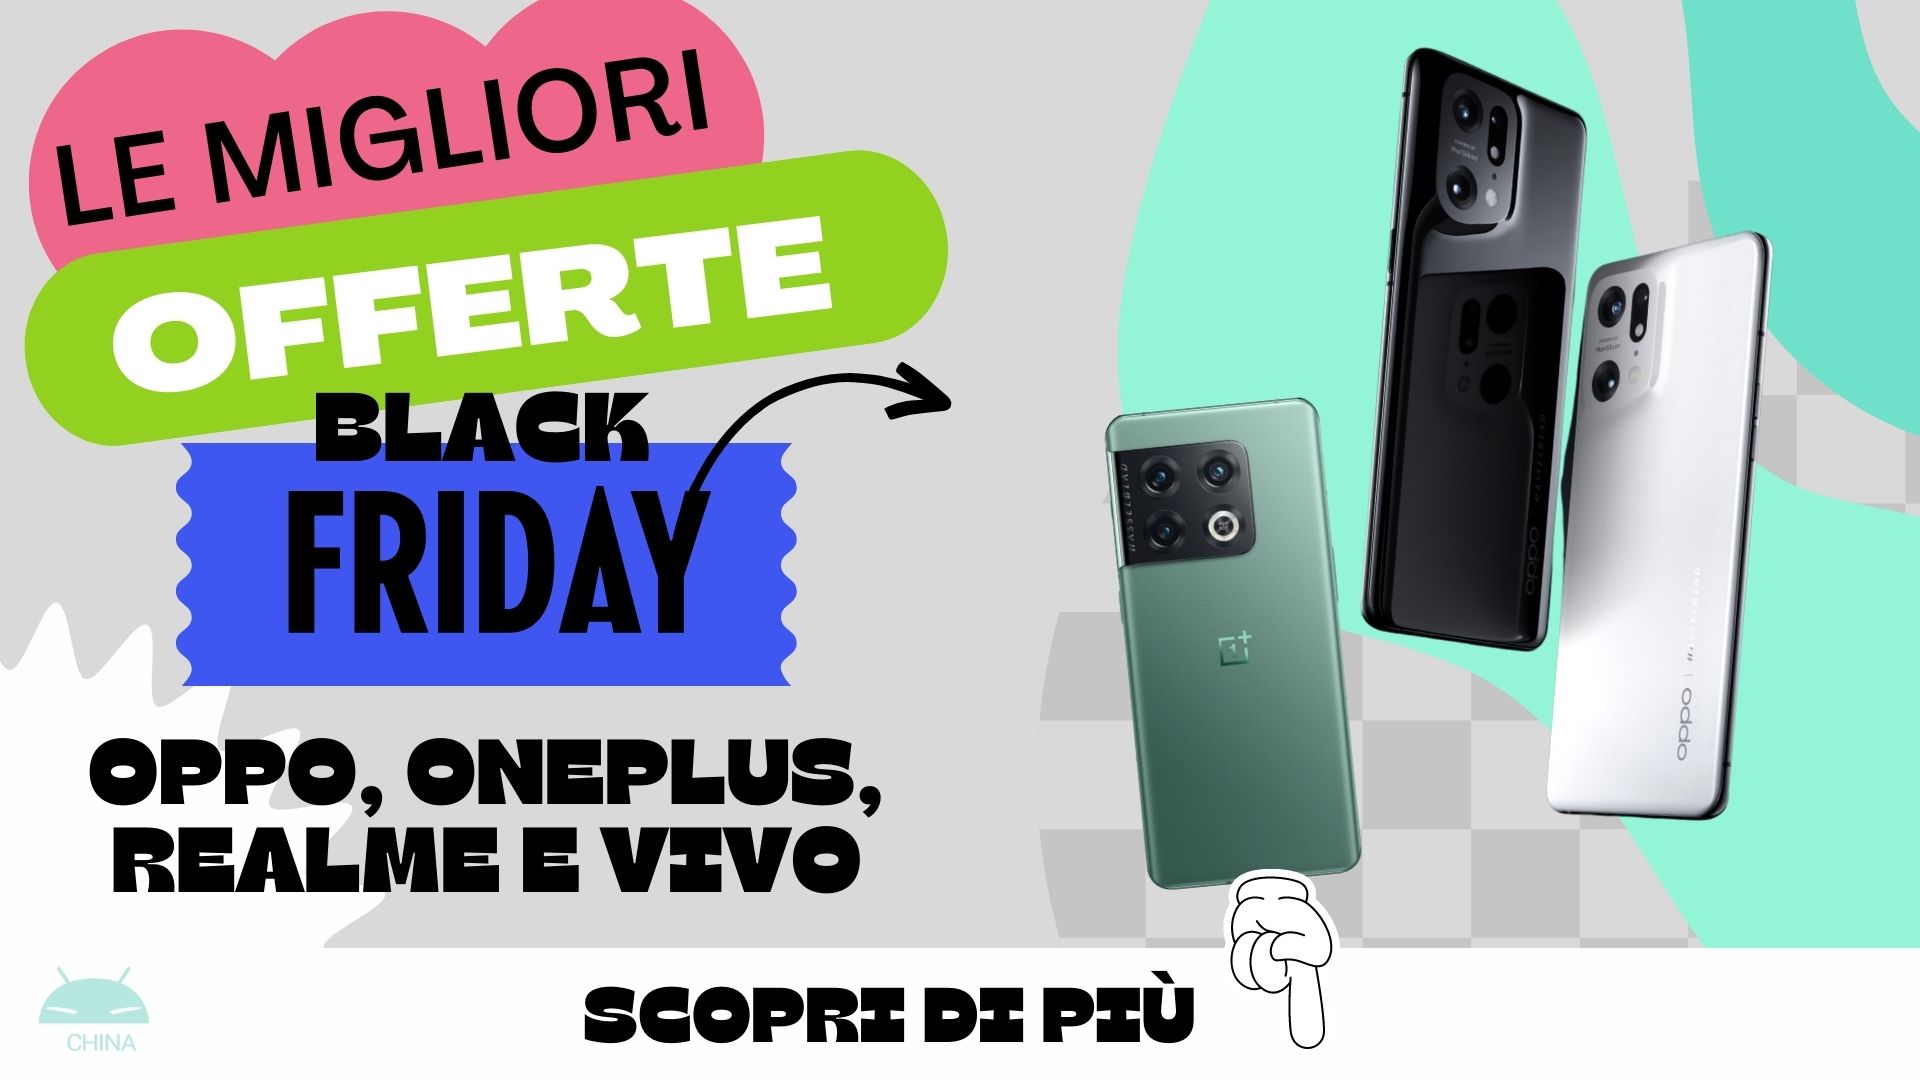 Le migliori offerte OPPO, OnePlus, Realme, vivo per il Black Friday 